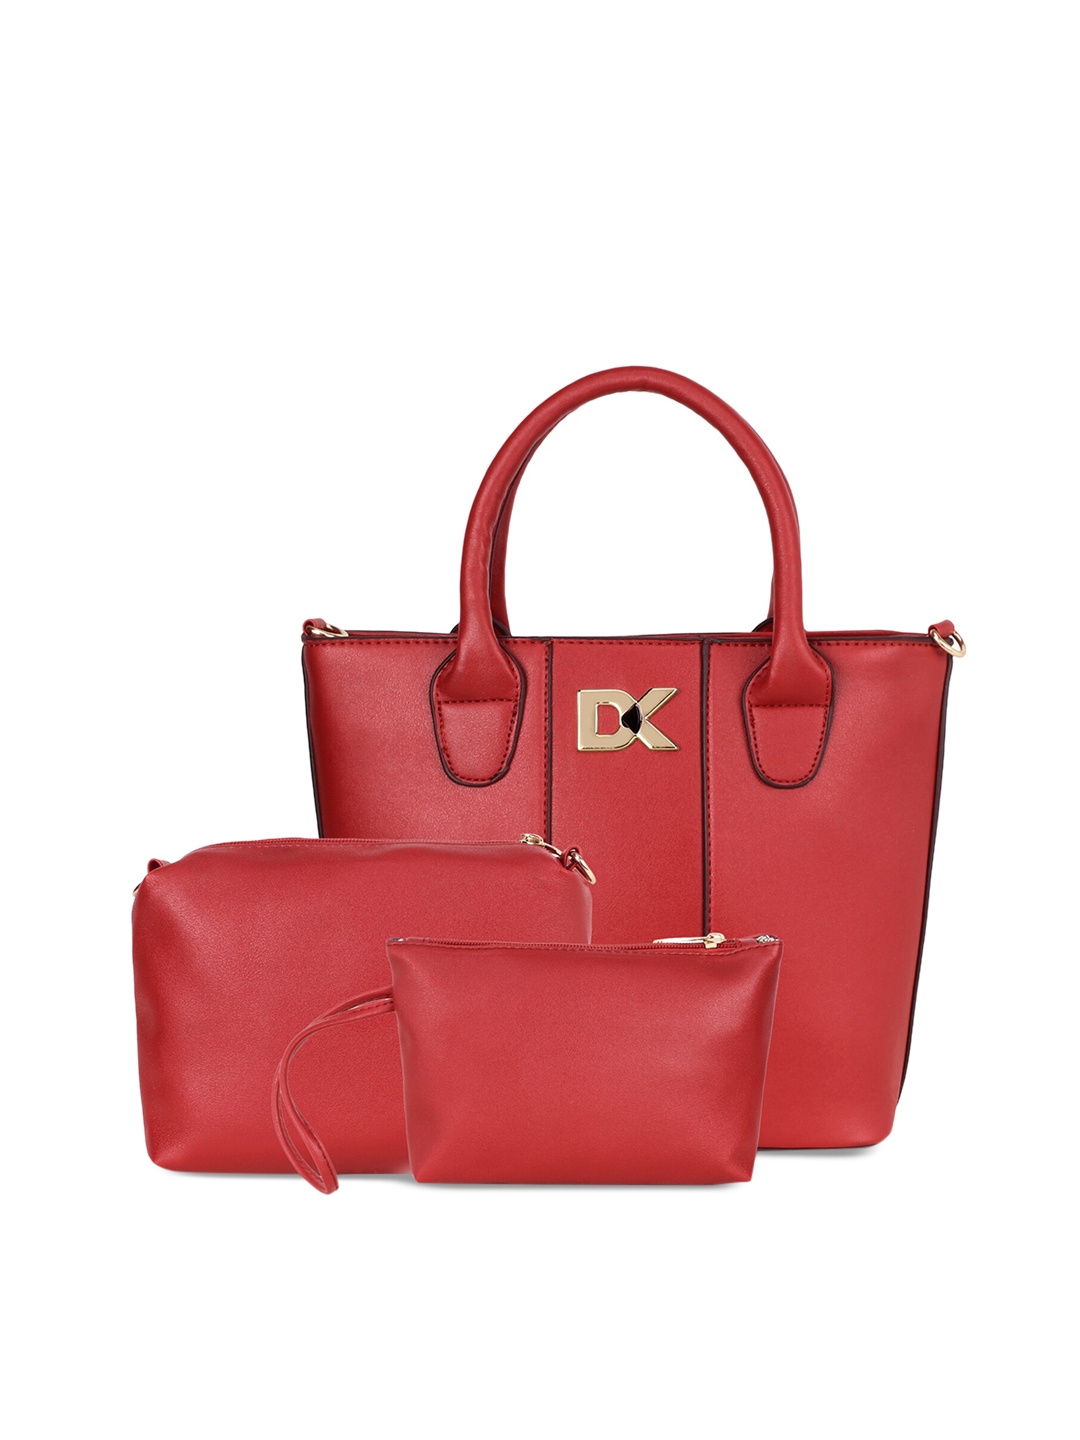 Diana Korr Red Solid Shoulder Bag   Pouches